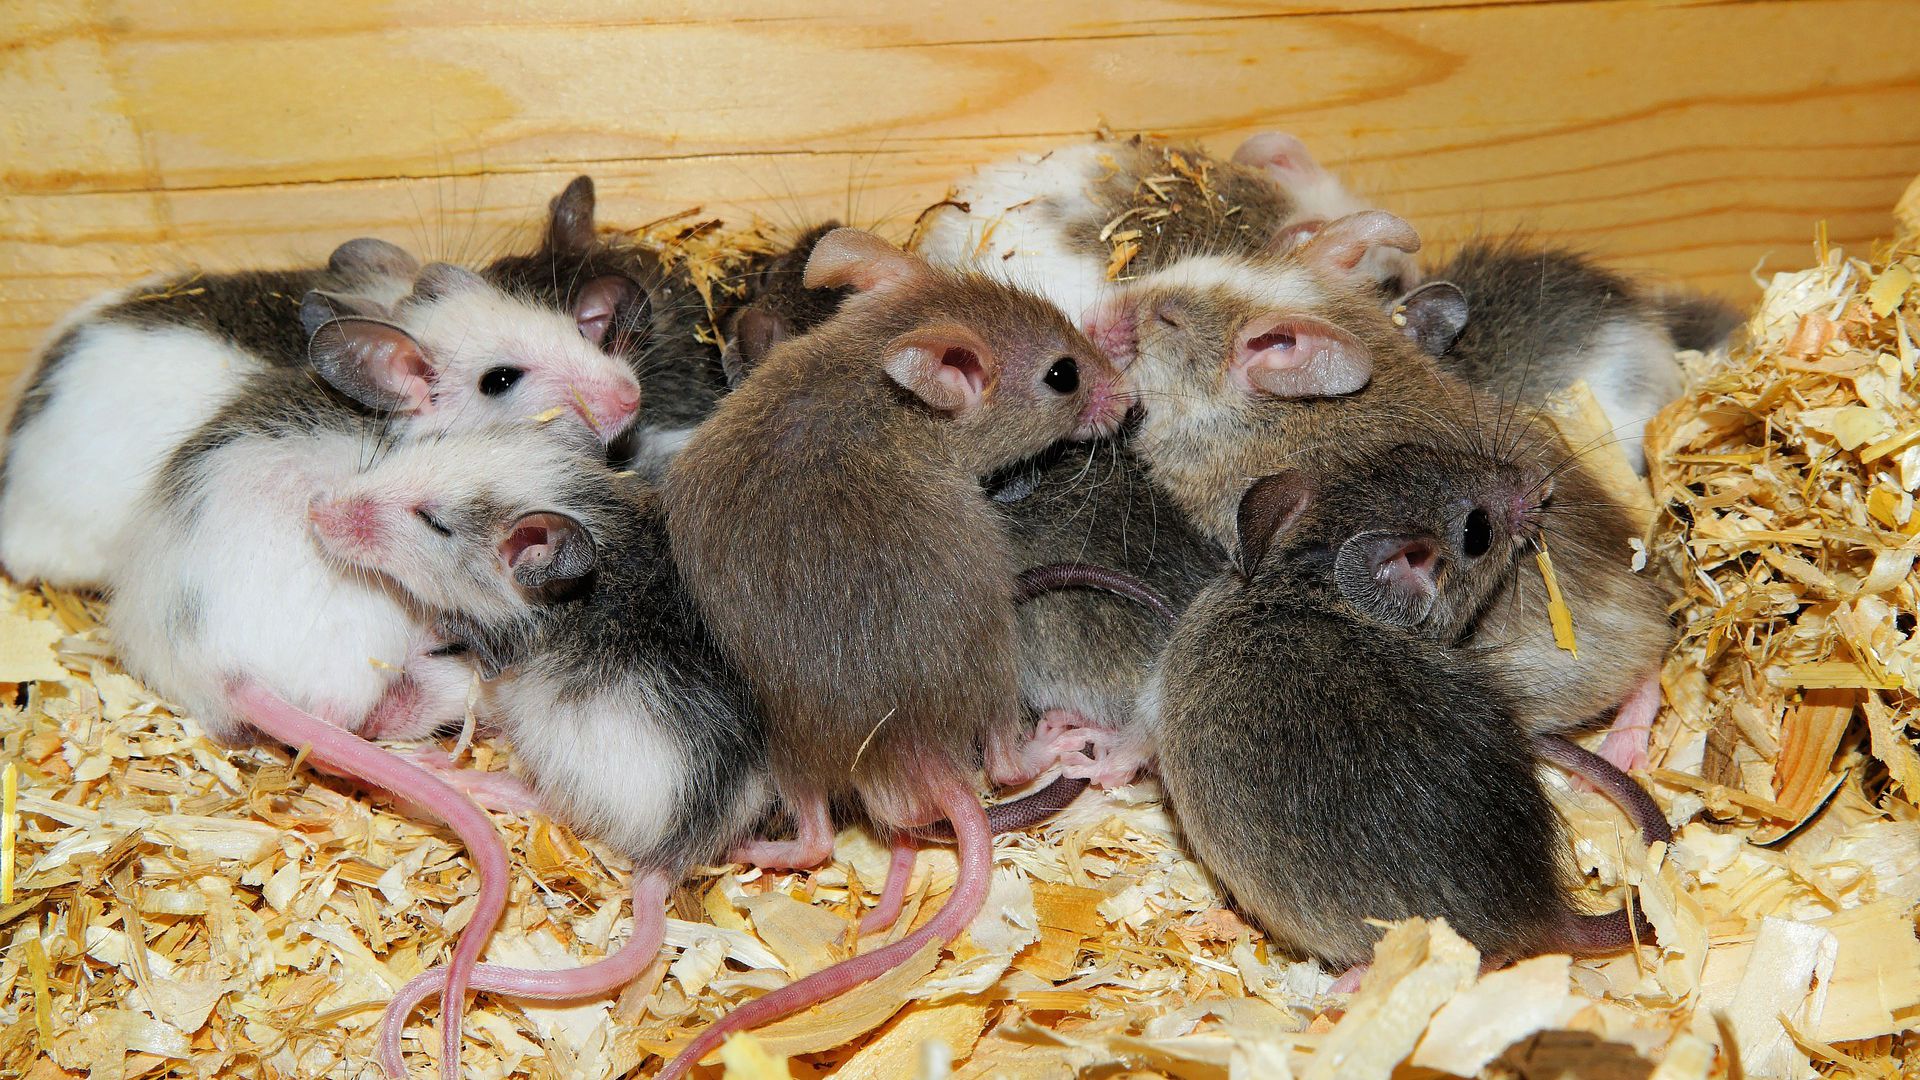 Tipos de ratos: você conhece todos?